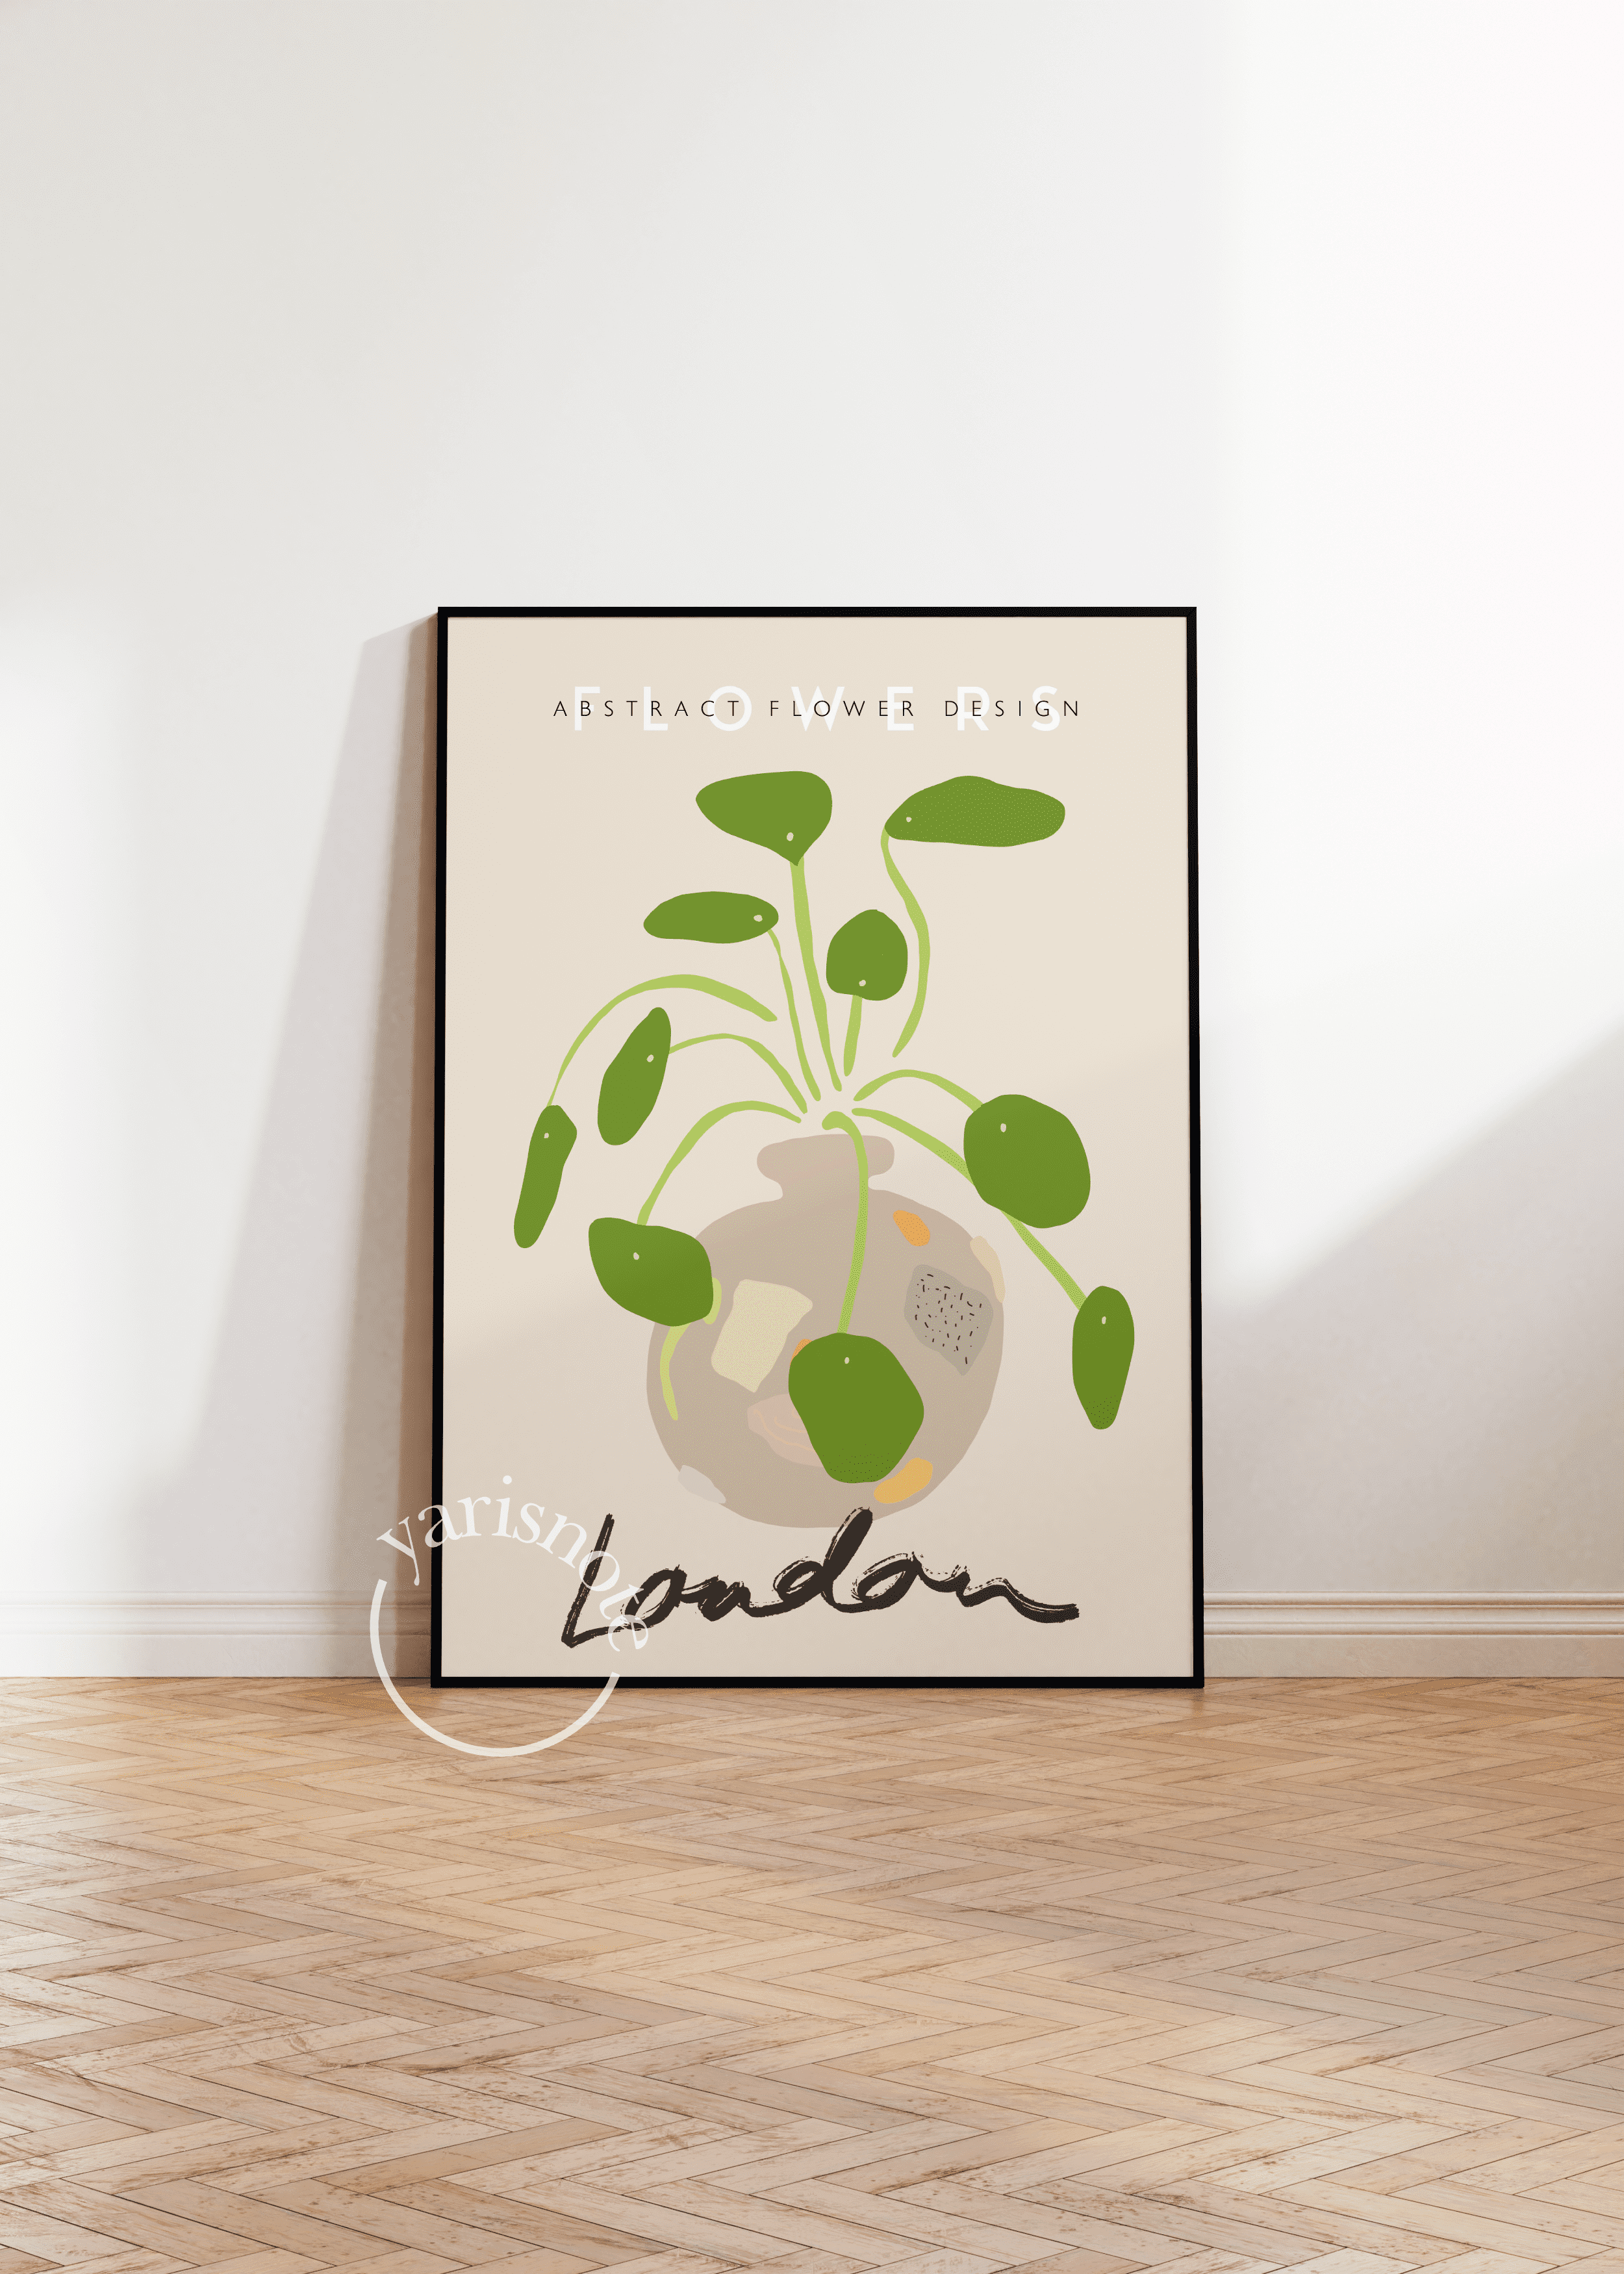 London Flowers Unframed Poster